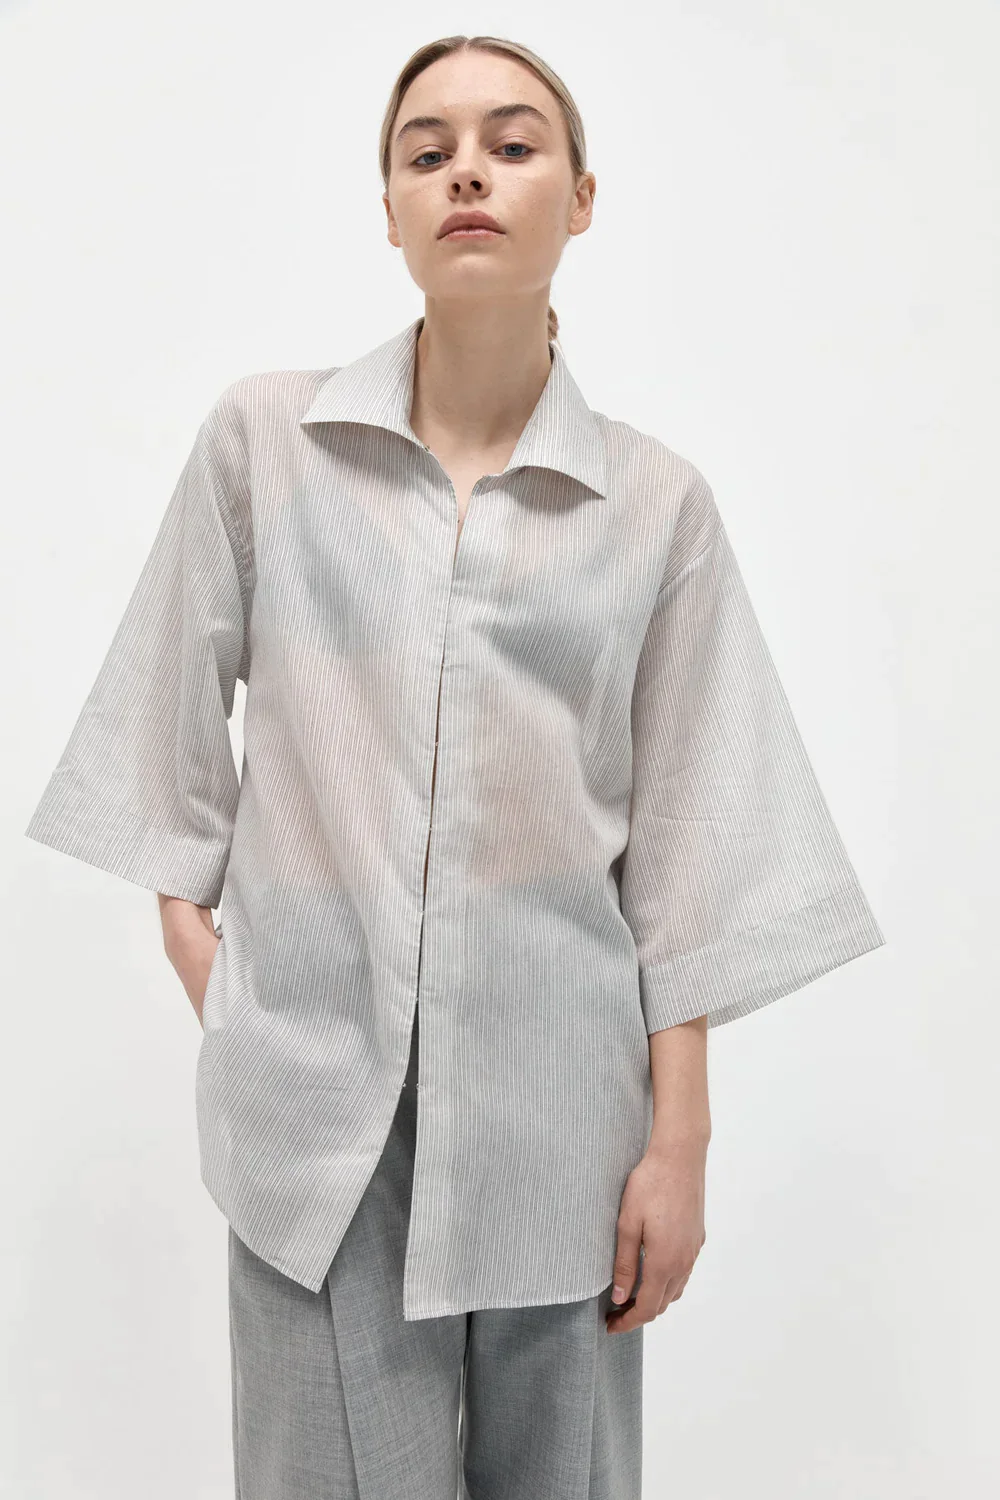 Product Image for Oversized Shirt, Grey